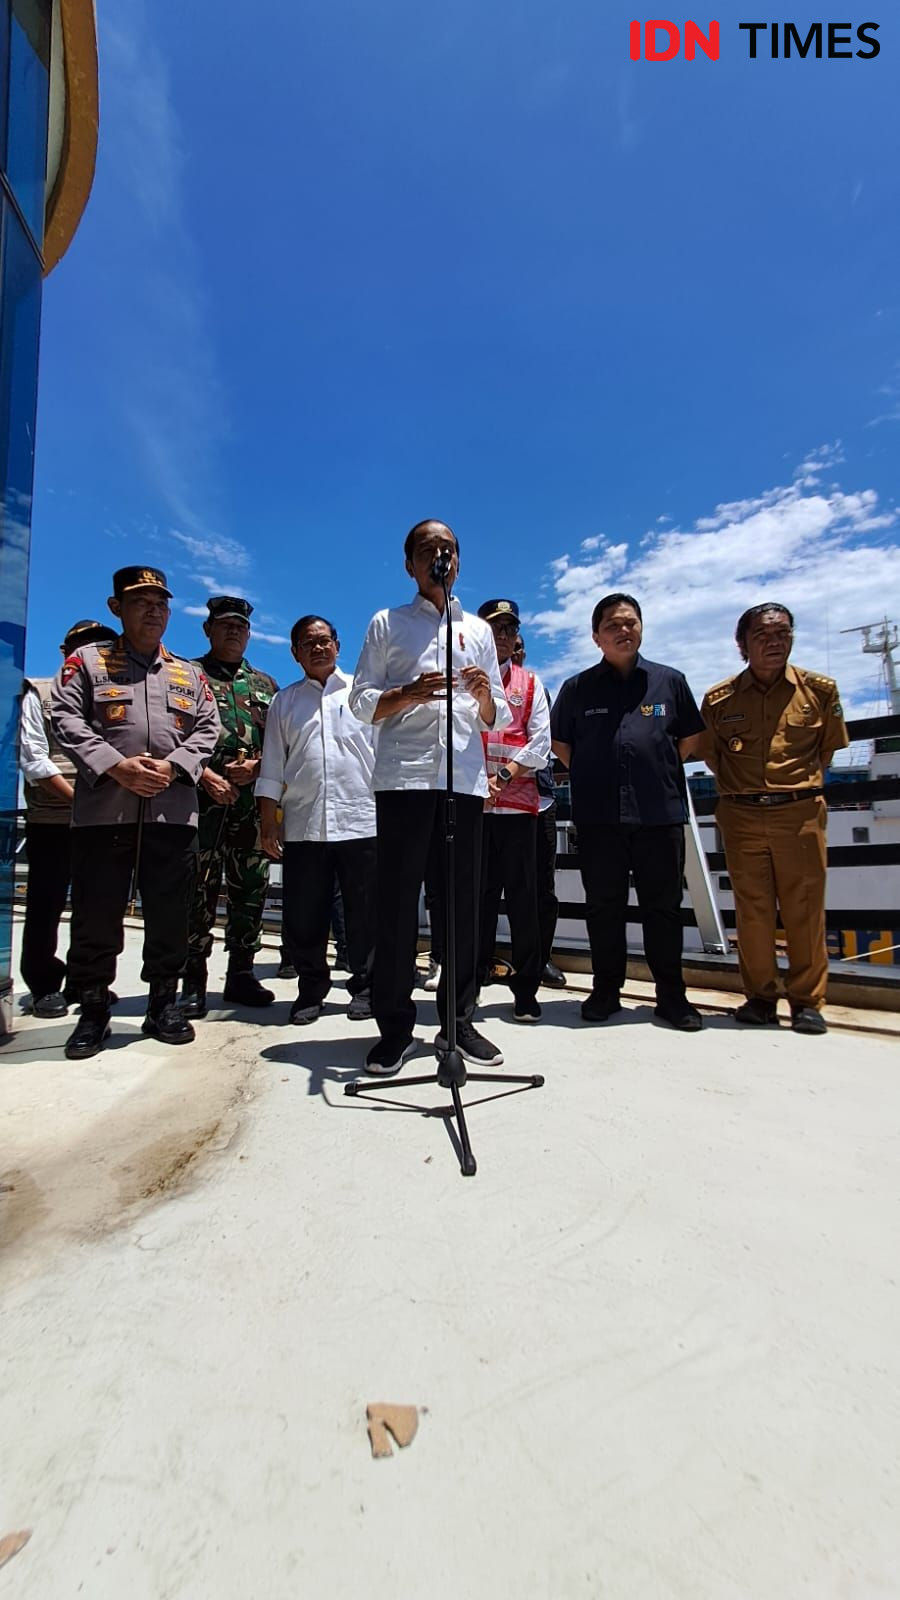 Cek Kesiapan Mudik di Merak, Jokowi: Jangan Seperti Tahun Lalu